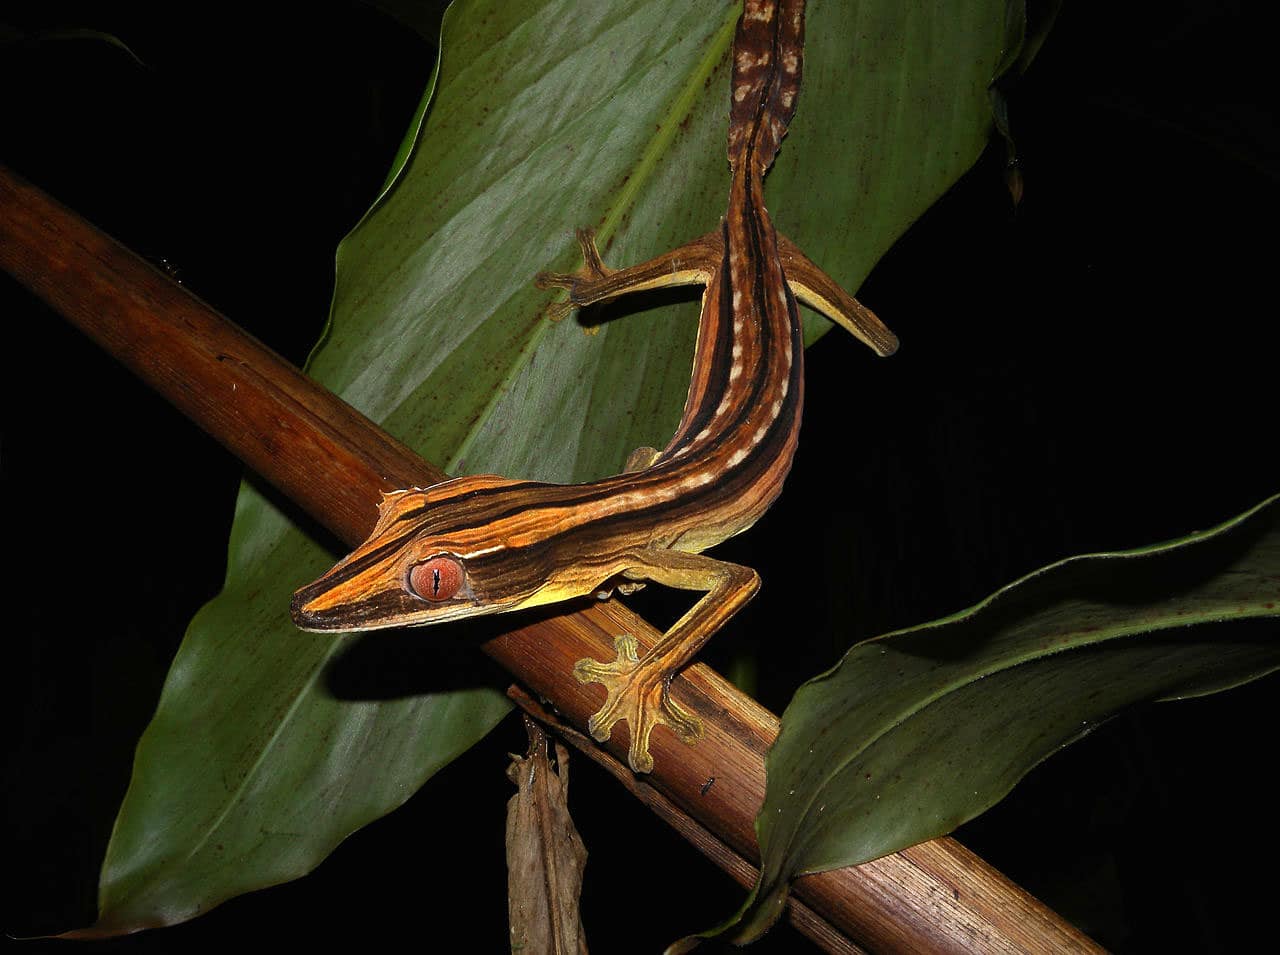 Leaf-Tailed Geckos